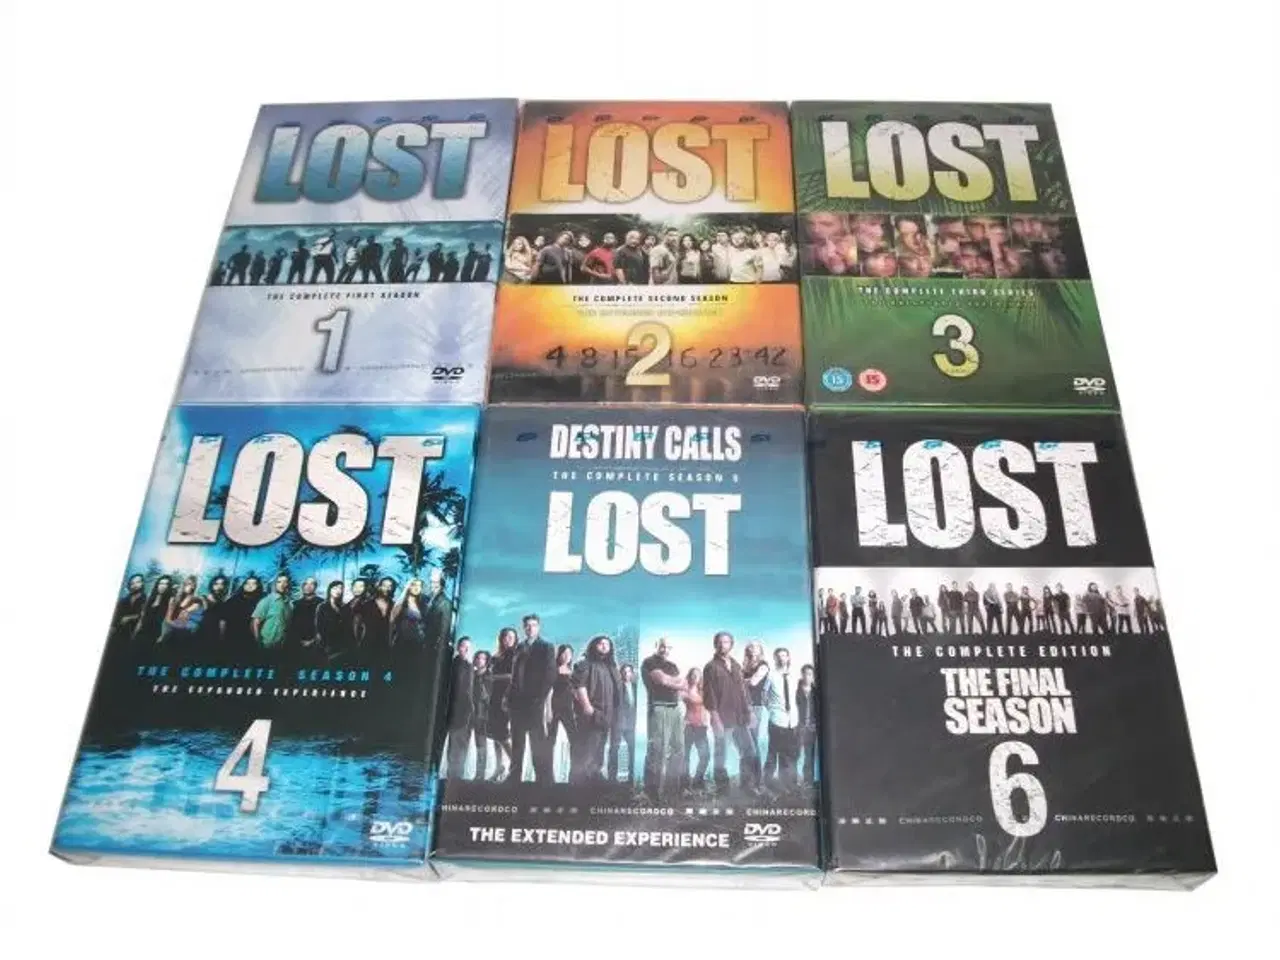 Billede 1 - komplet LOST serie ; sæson 1 til 6